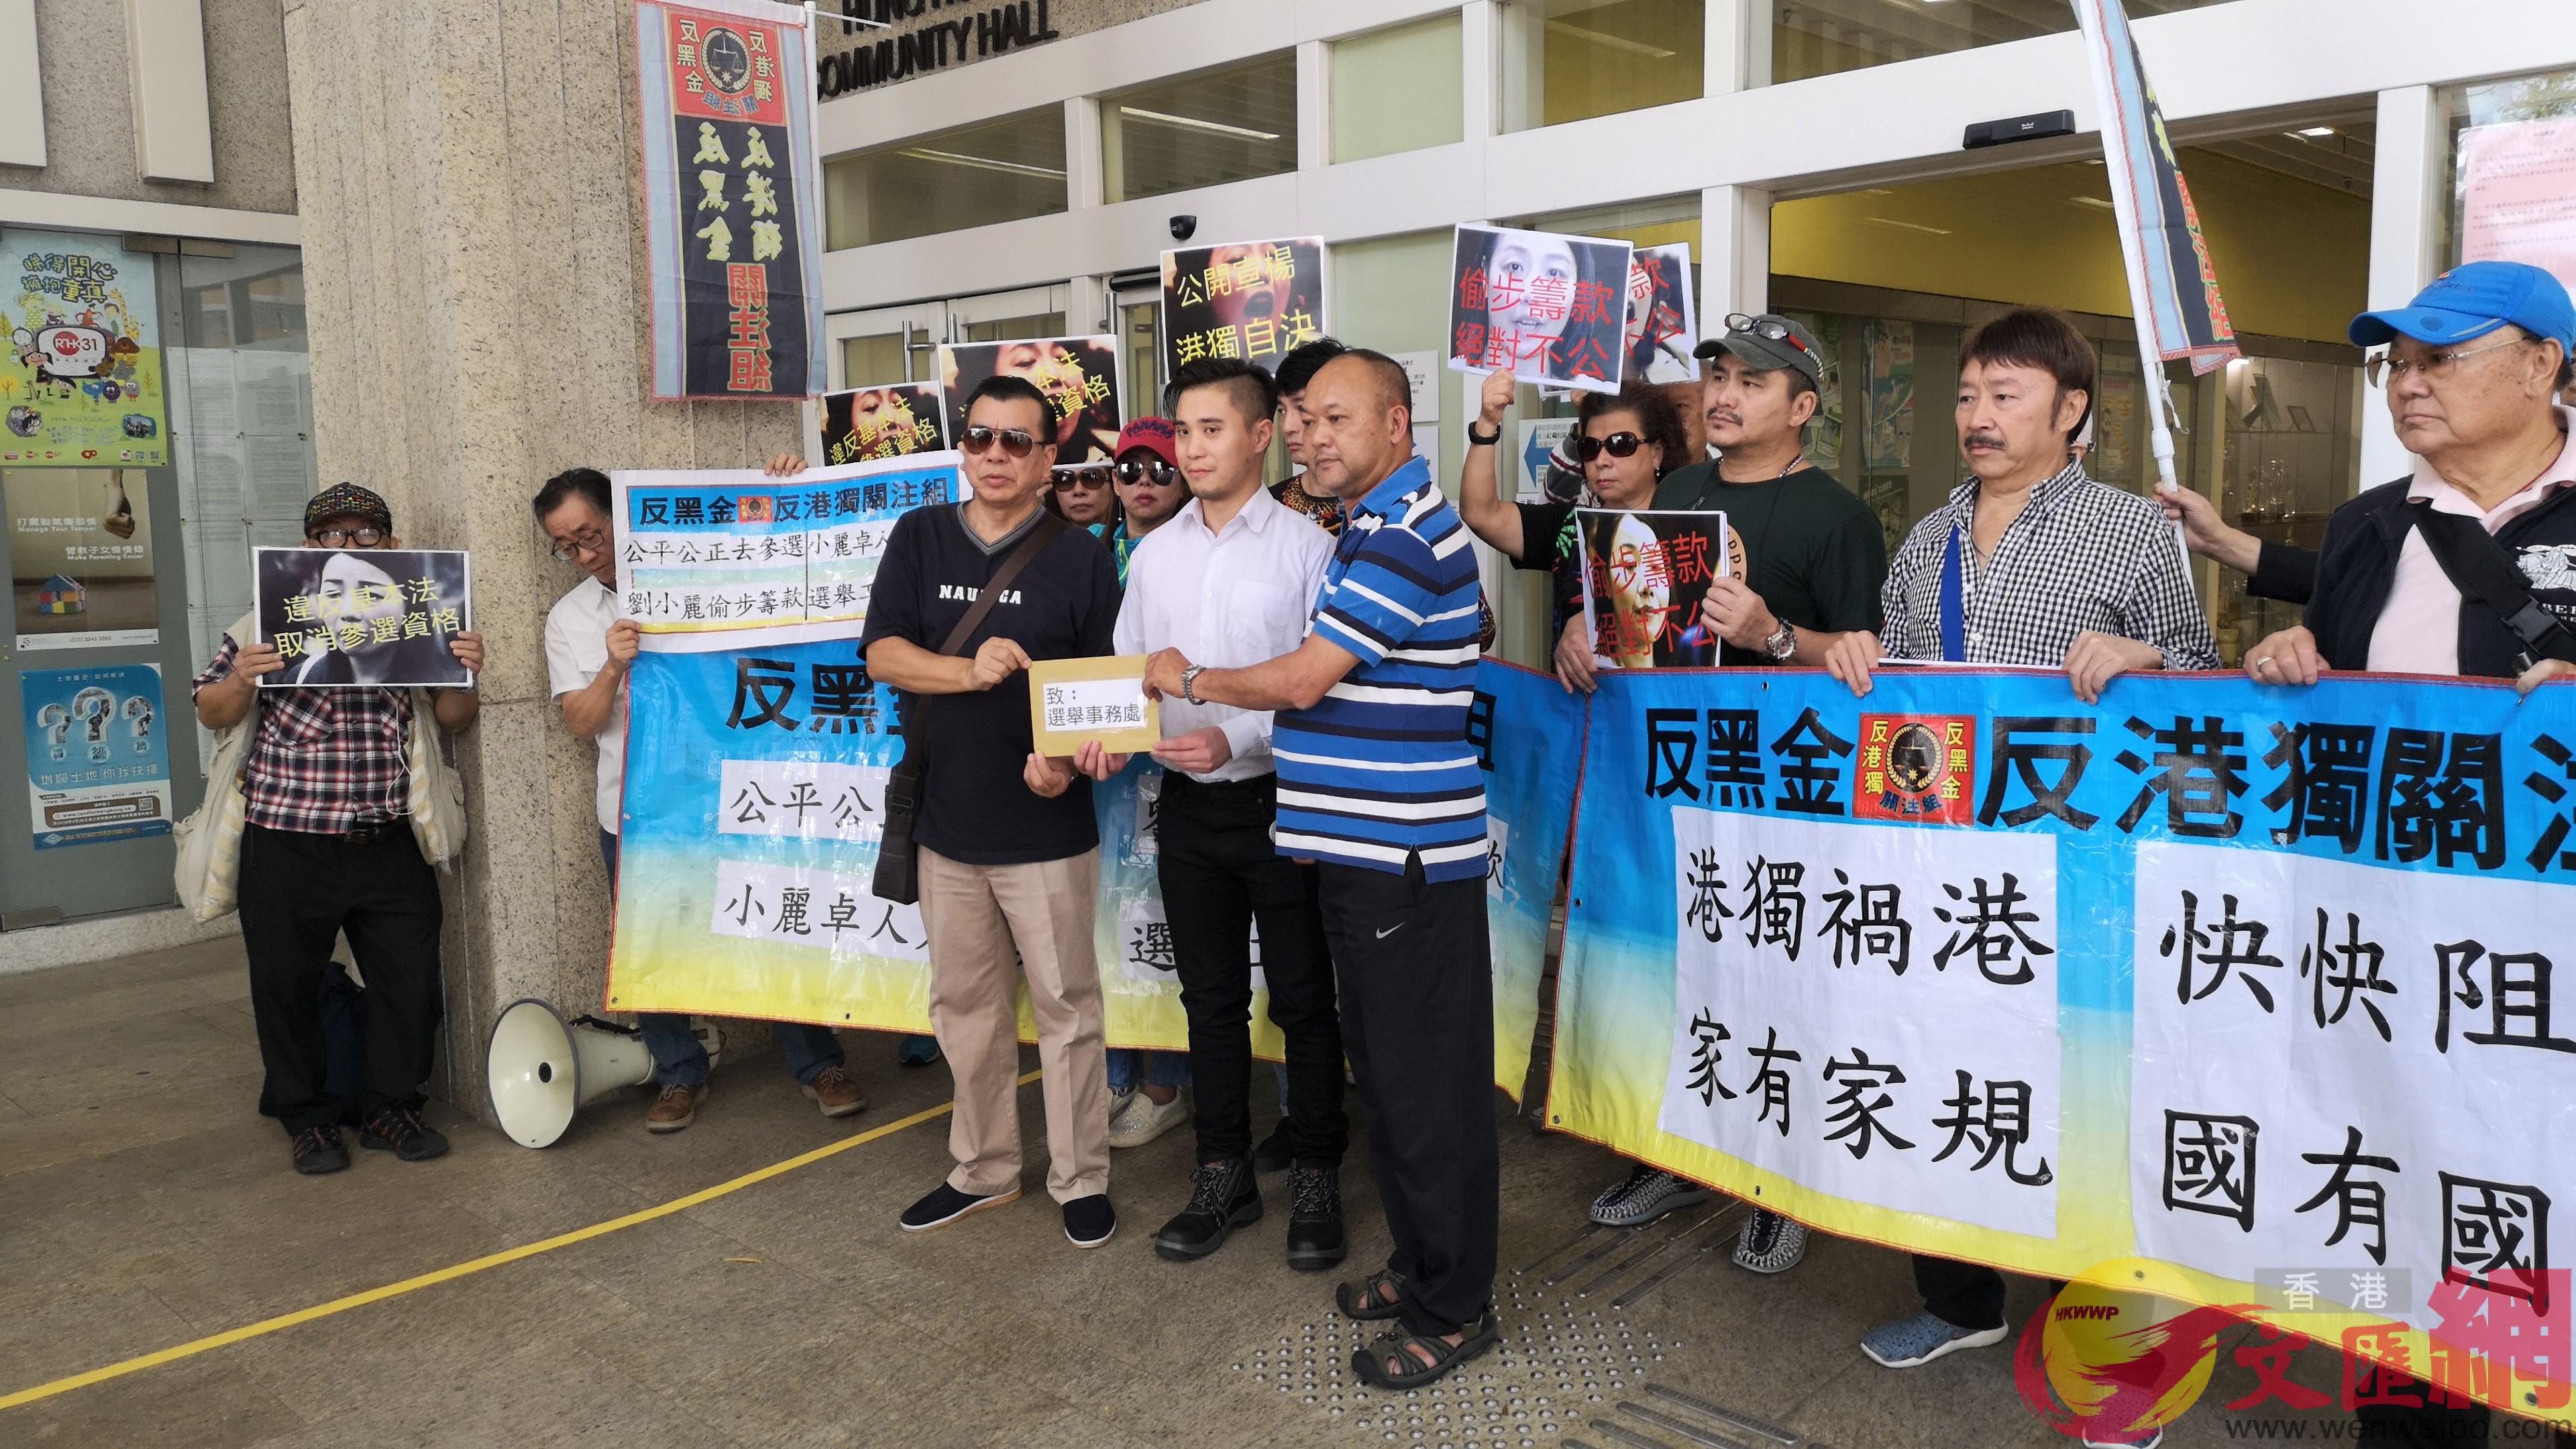 團體請願要求褫奪劉小麗參選立法會資格